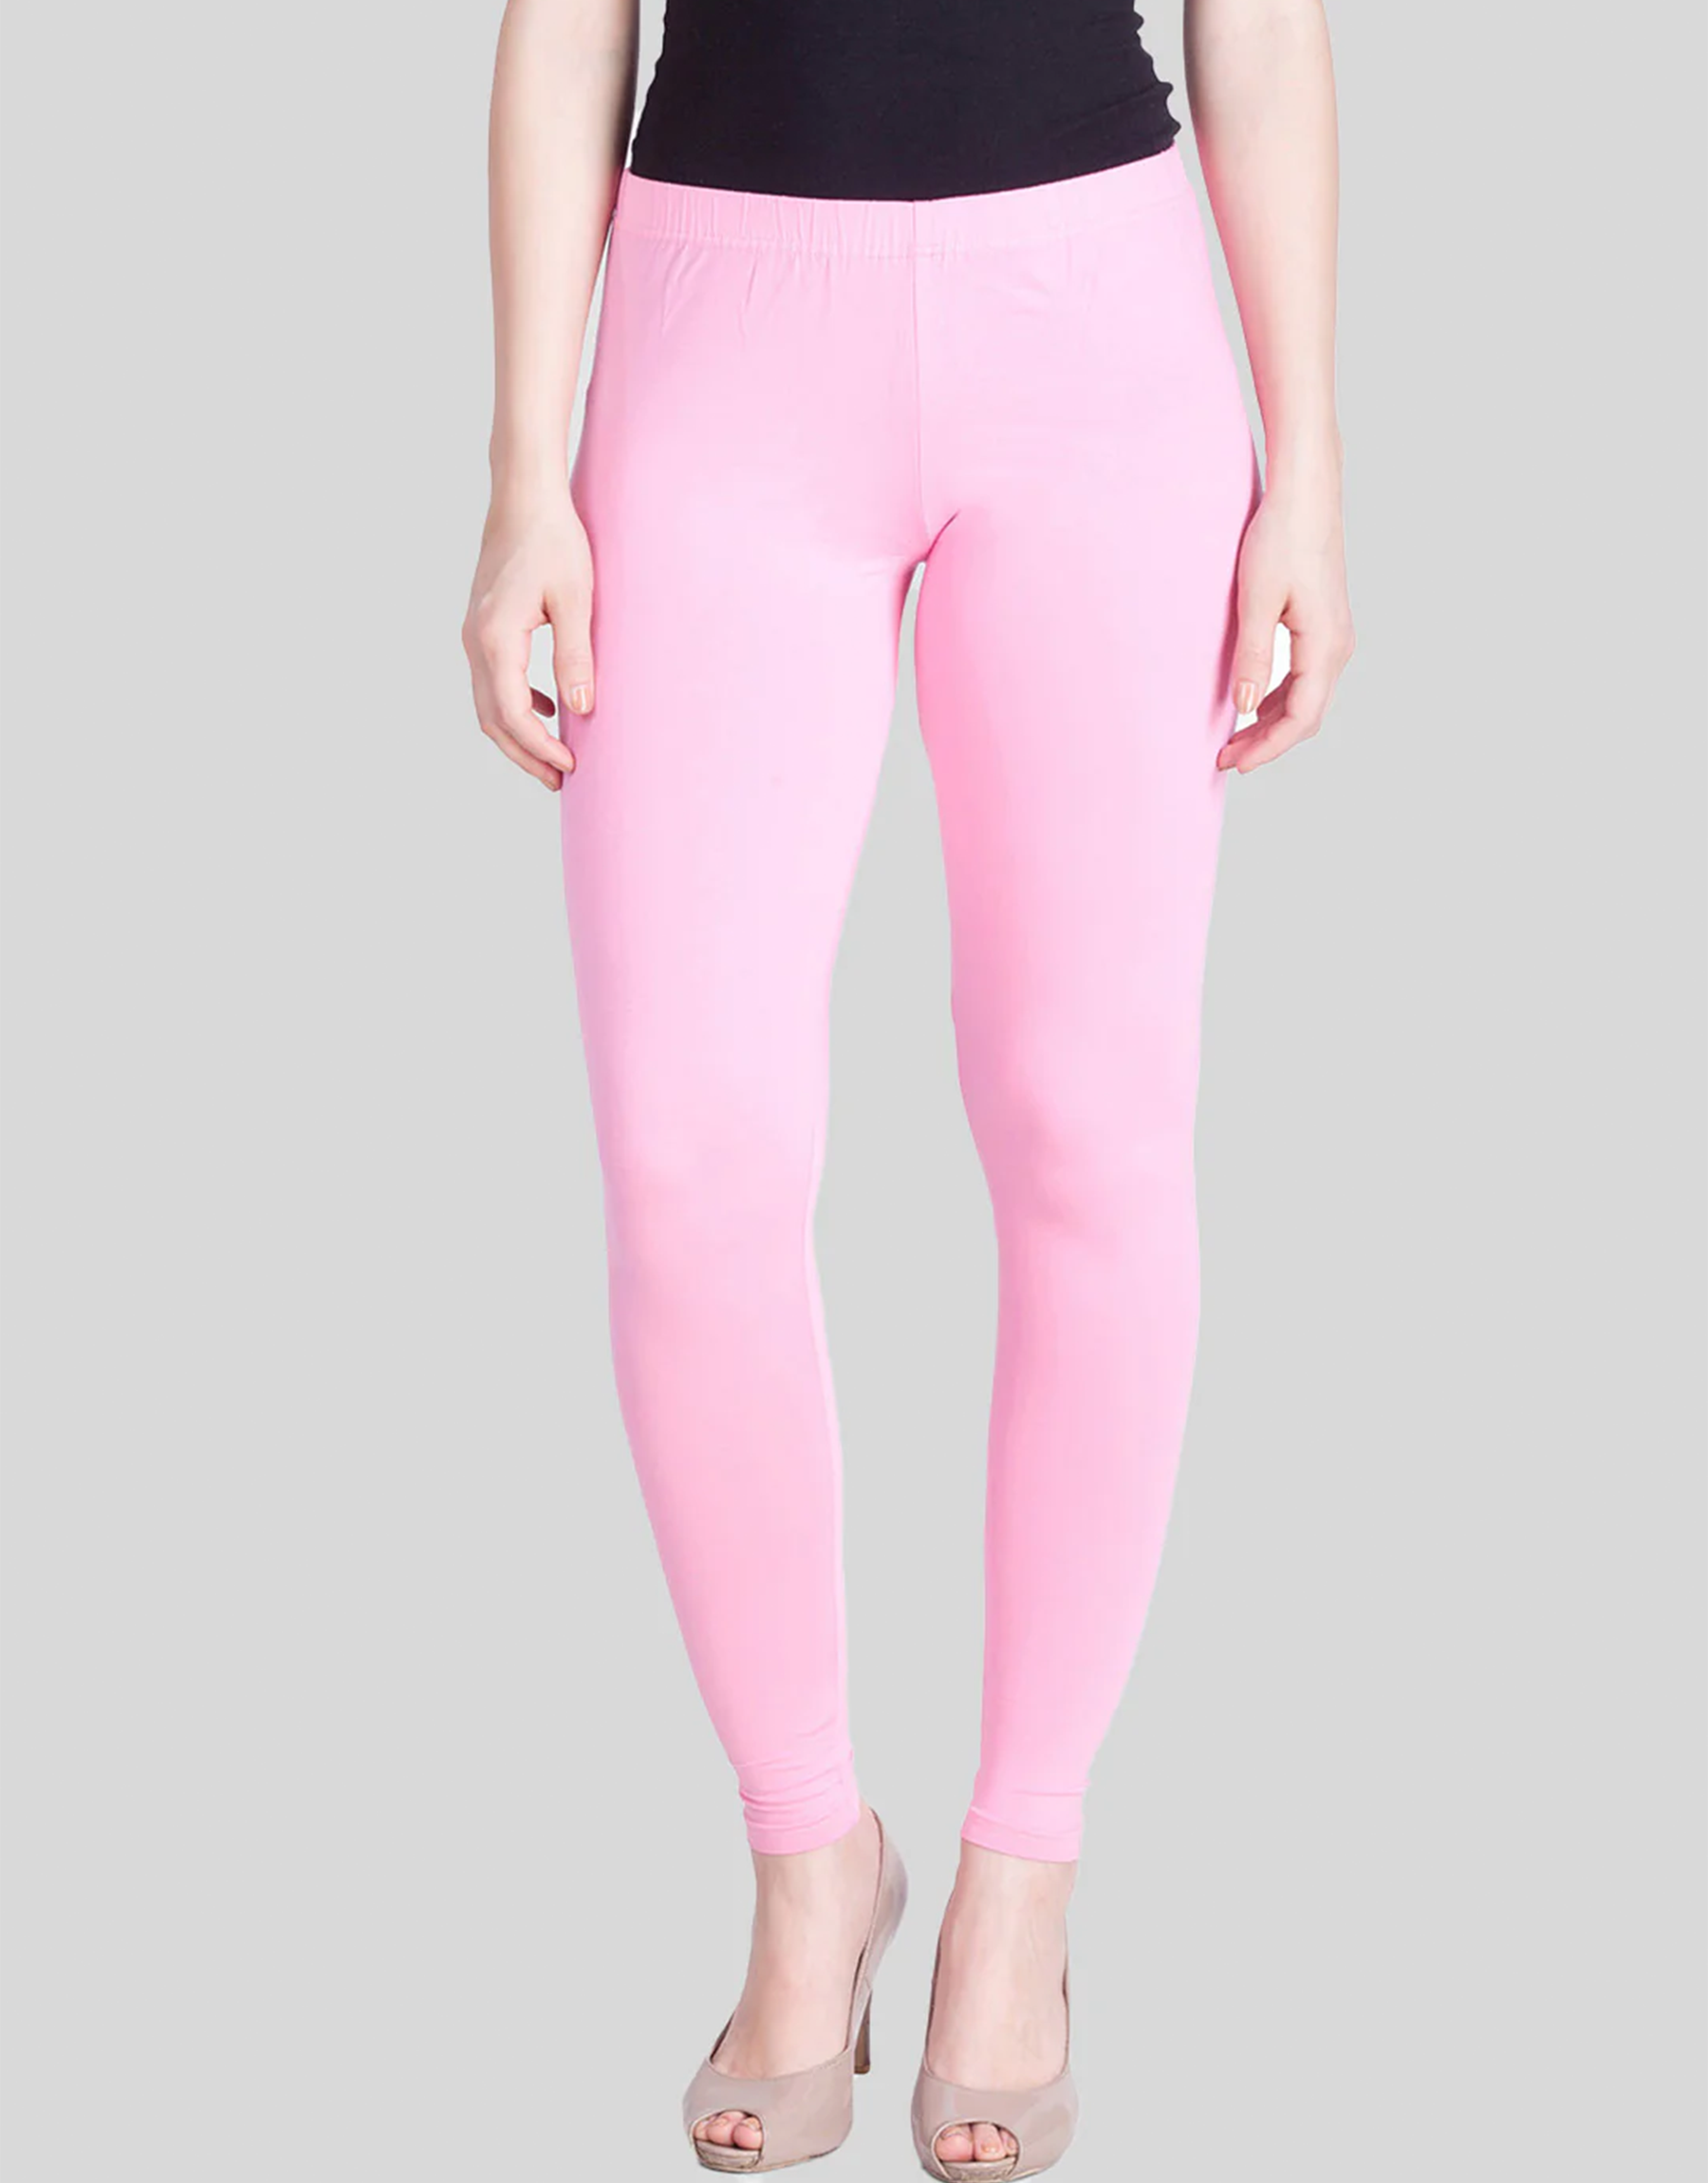 Active Wear, Size:S( Prisma Legging/ Ankle Length)Colour: Pink